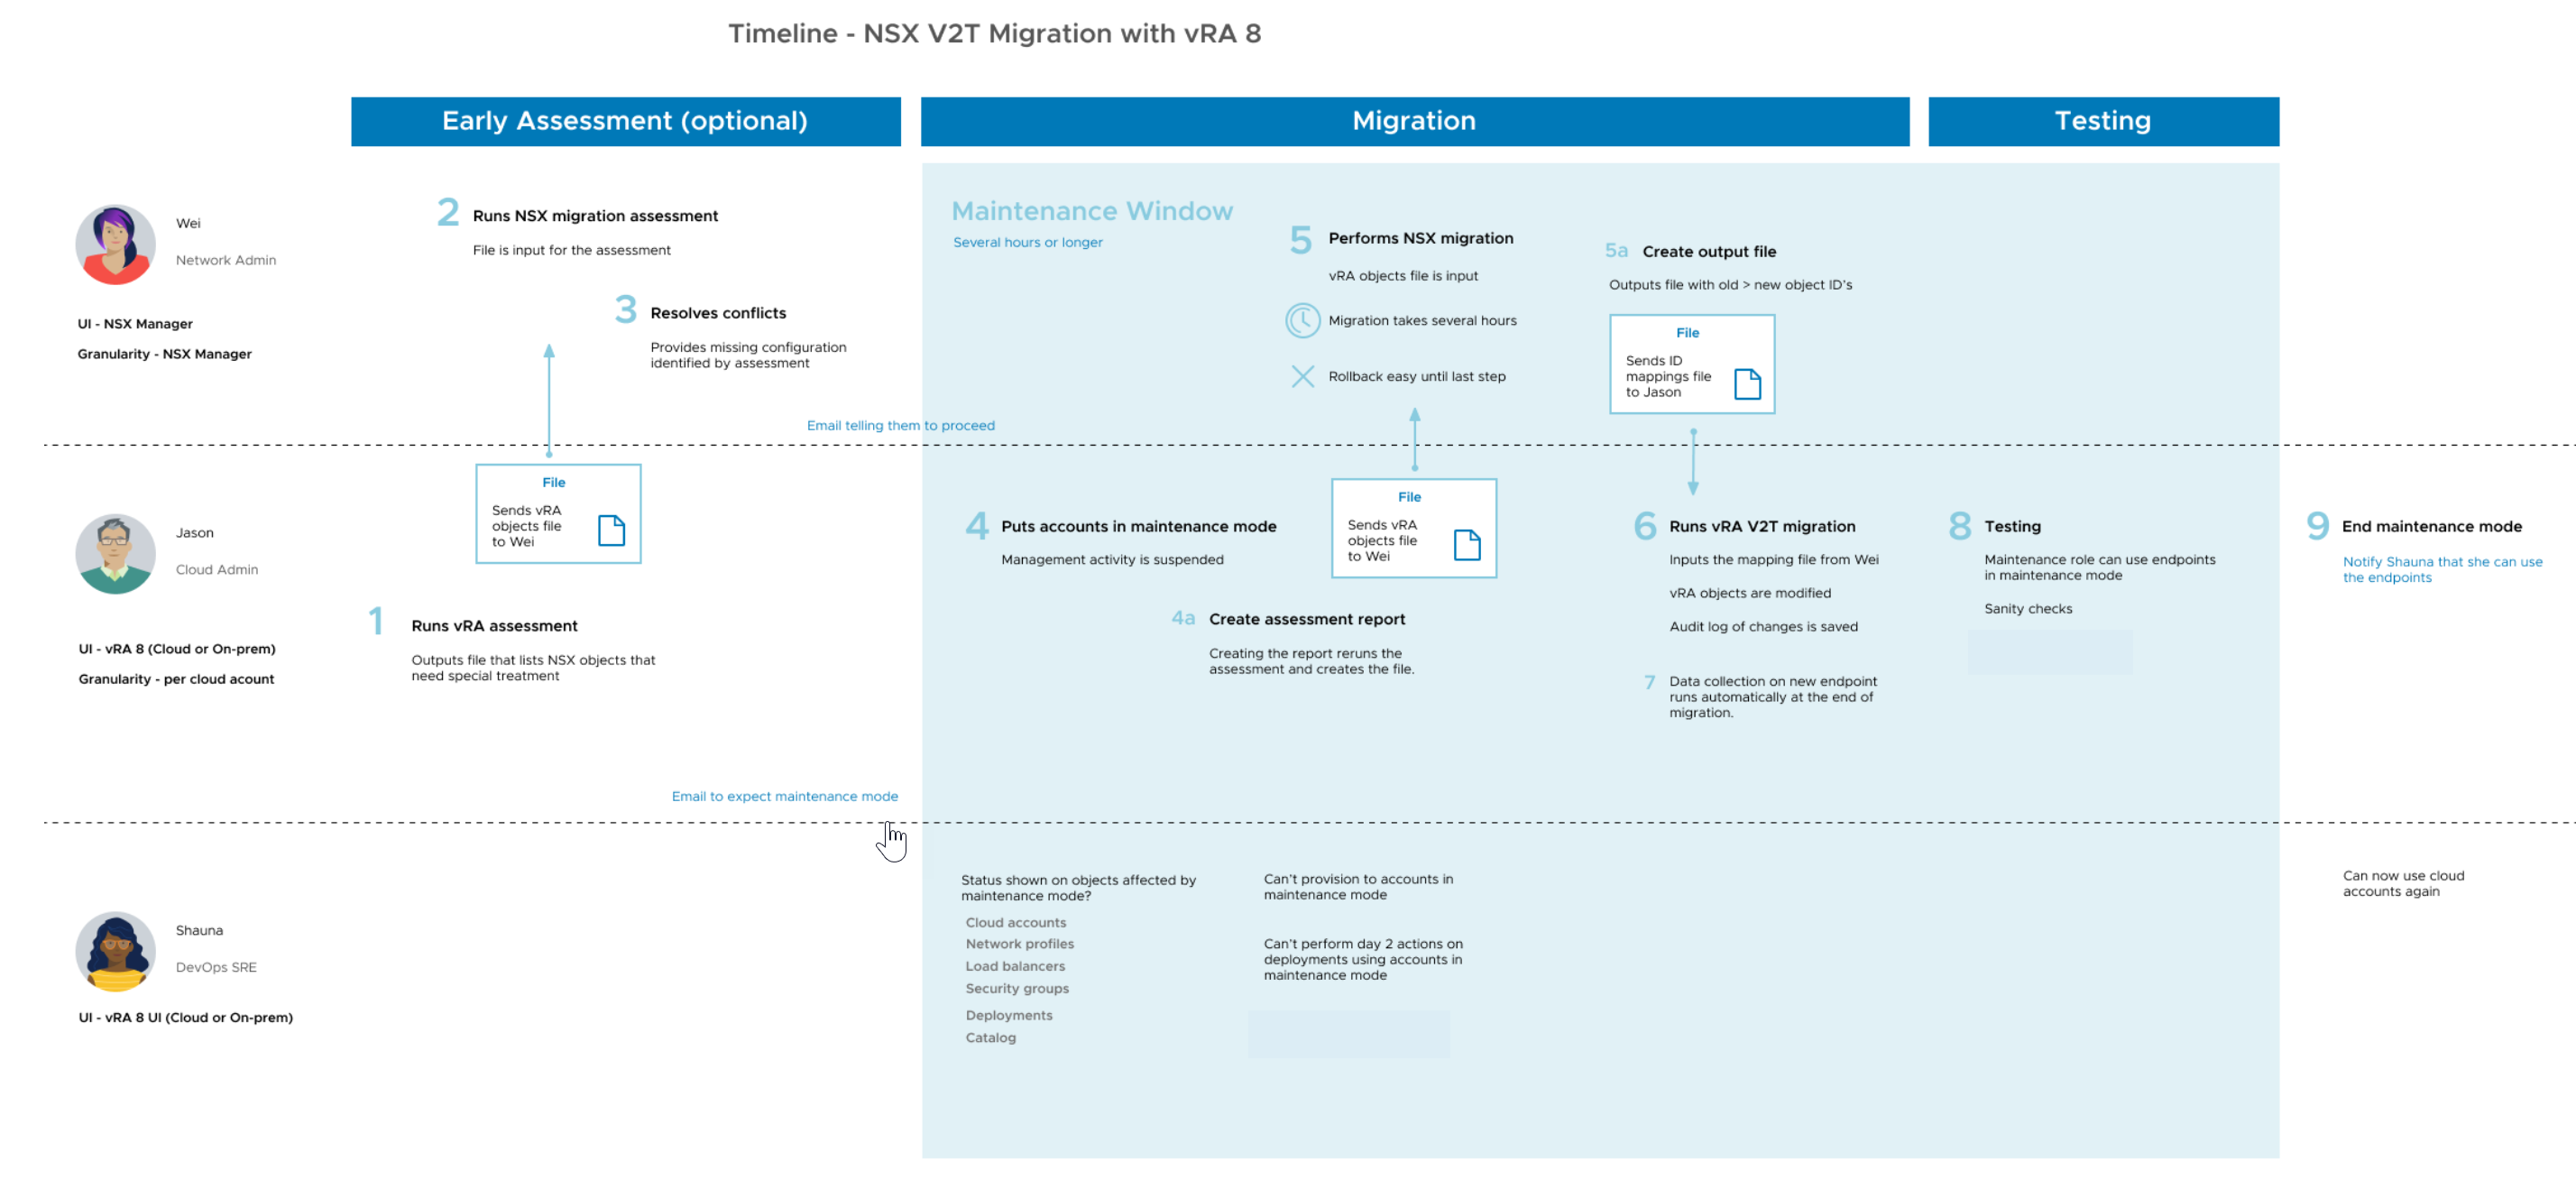 Обзор задач администраторов NSX и vRA в процессе переноса V2T.